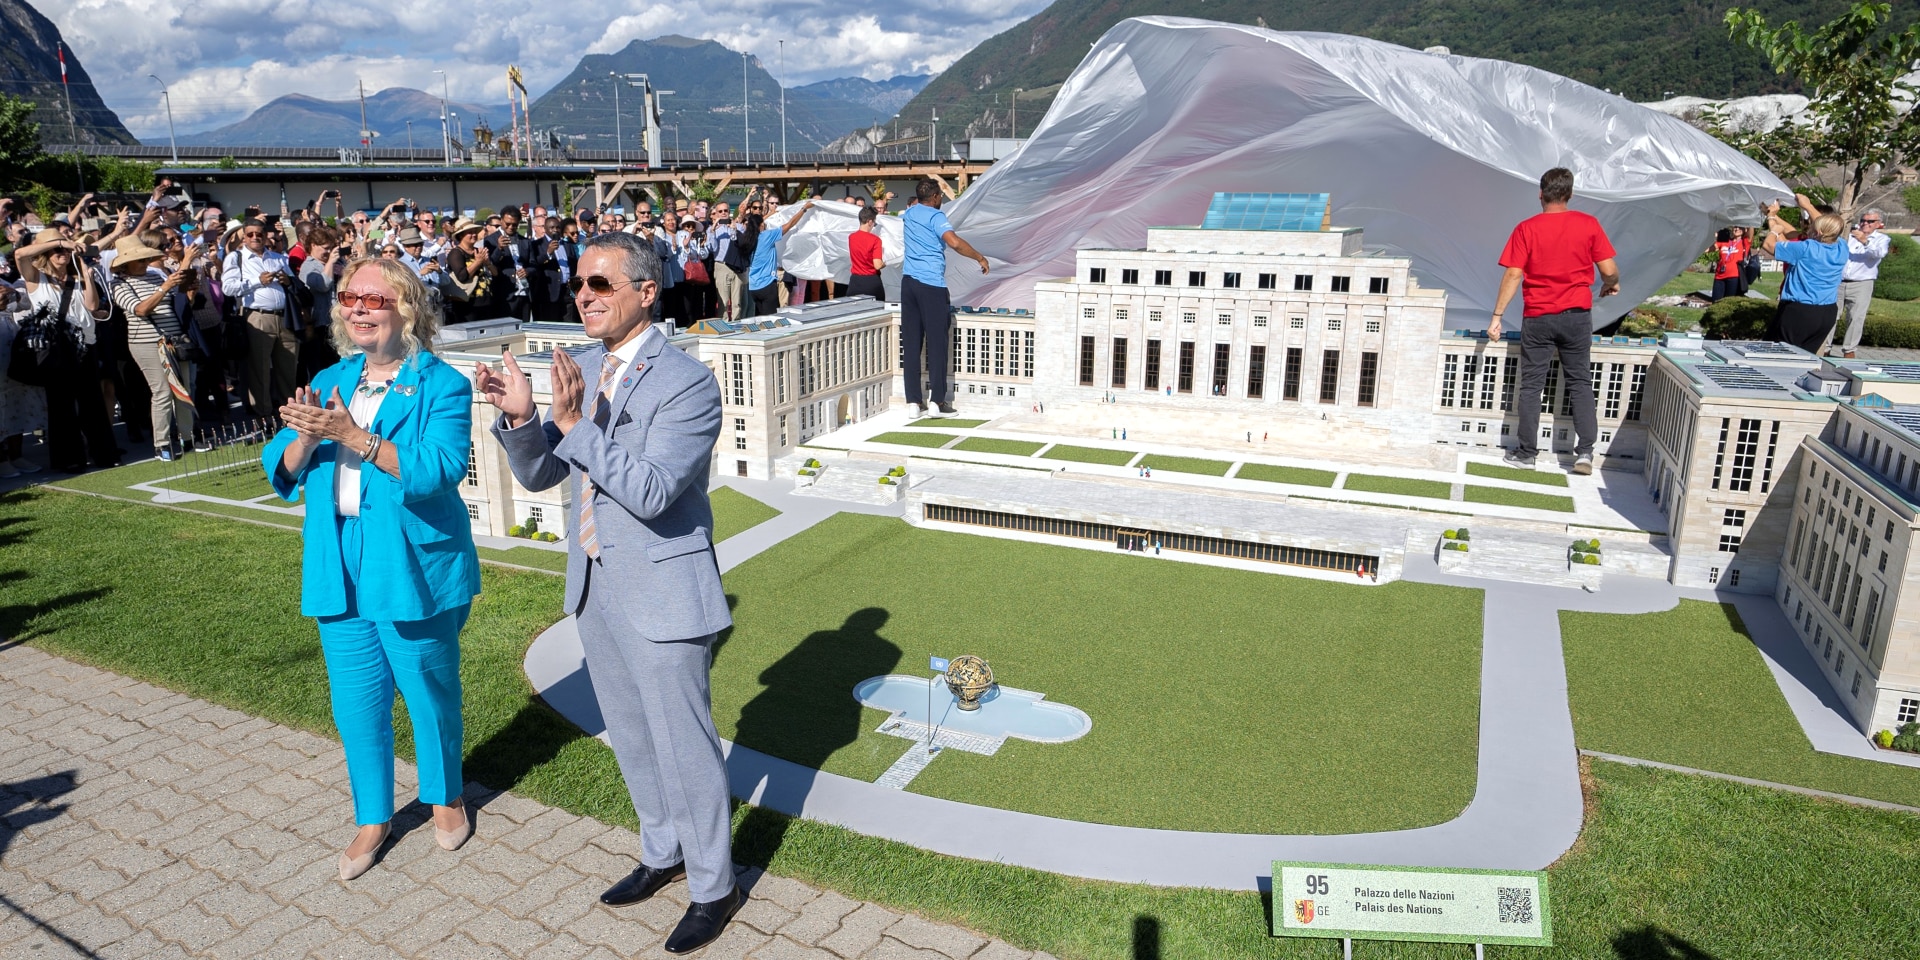 Il presidente della Confederazione Ignazio Cassis inaugura il modello del Palazzo delle Nazioni alla Swissminiatur di Melide.